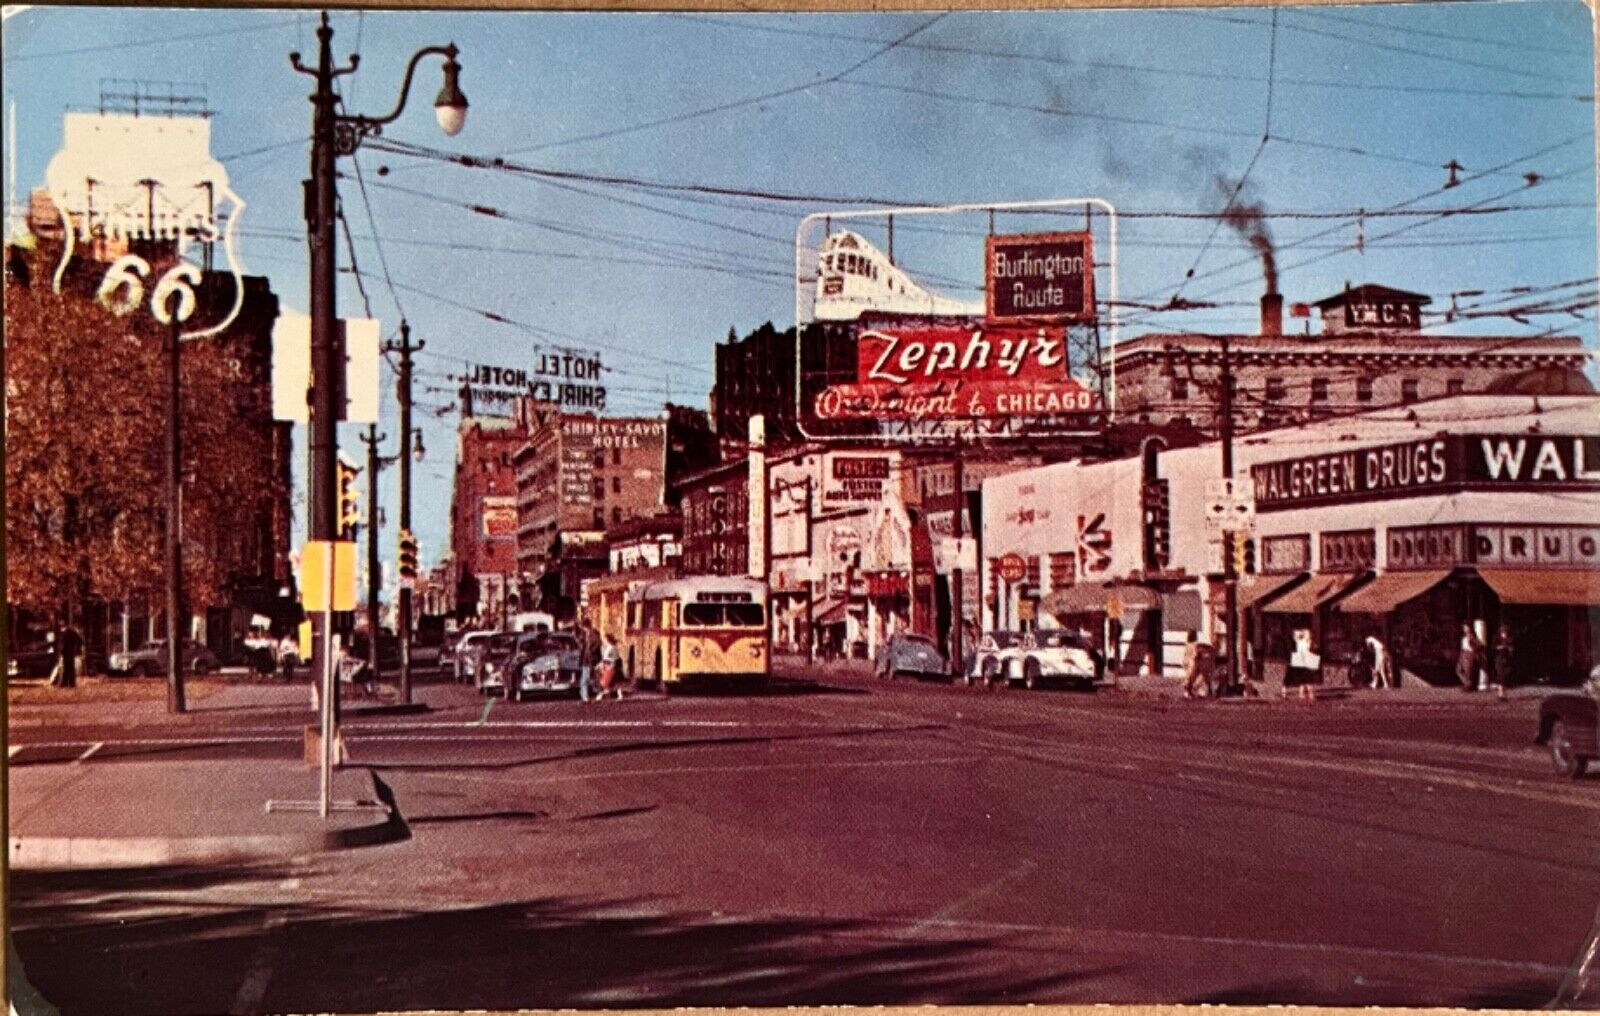 Denver Broadway Looking North Zephyr Sign Colorado Postcard c1950